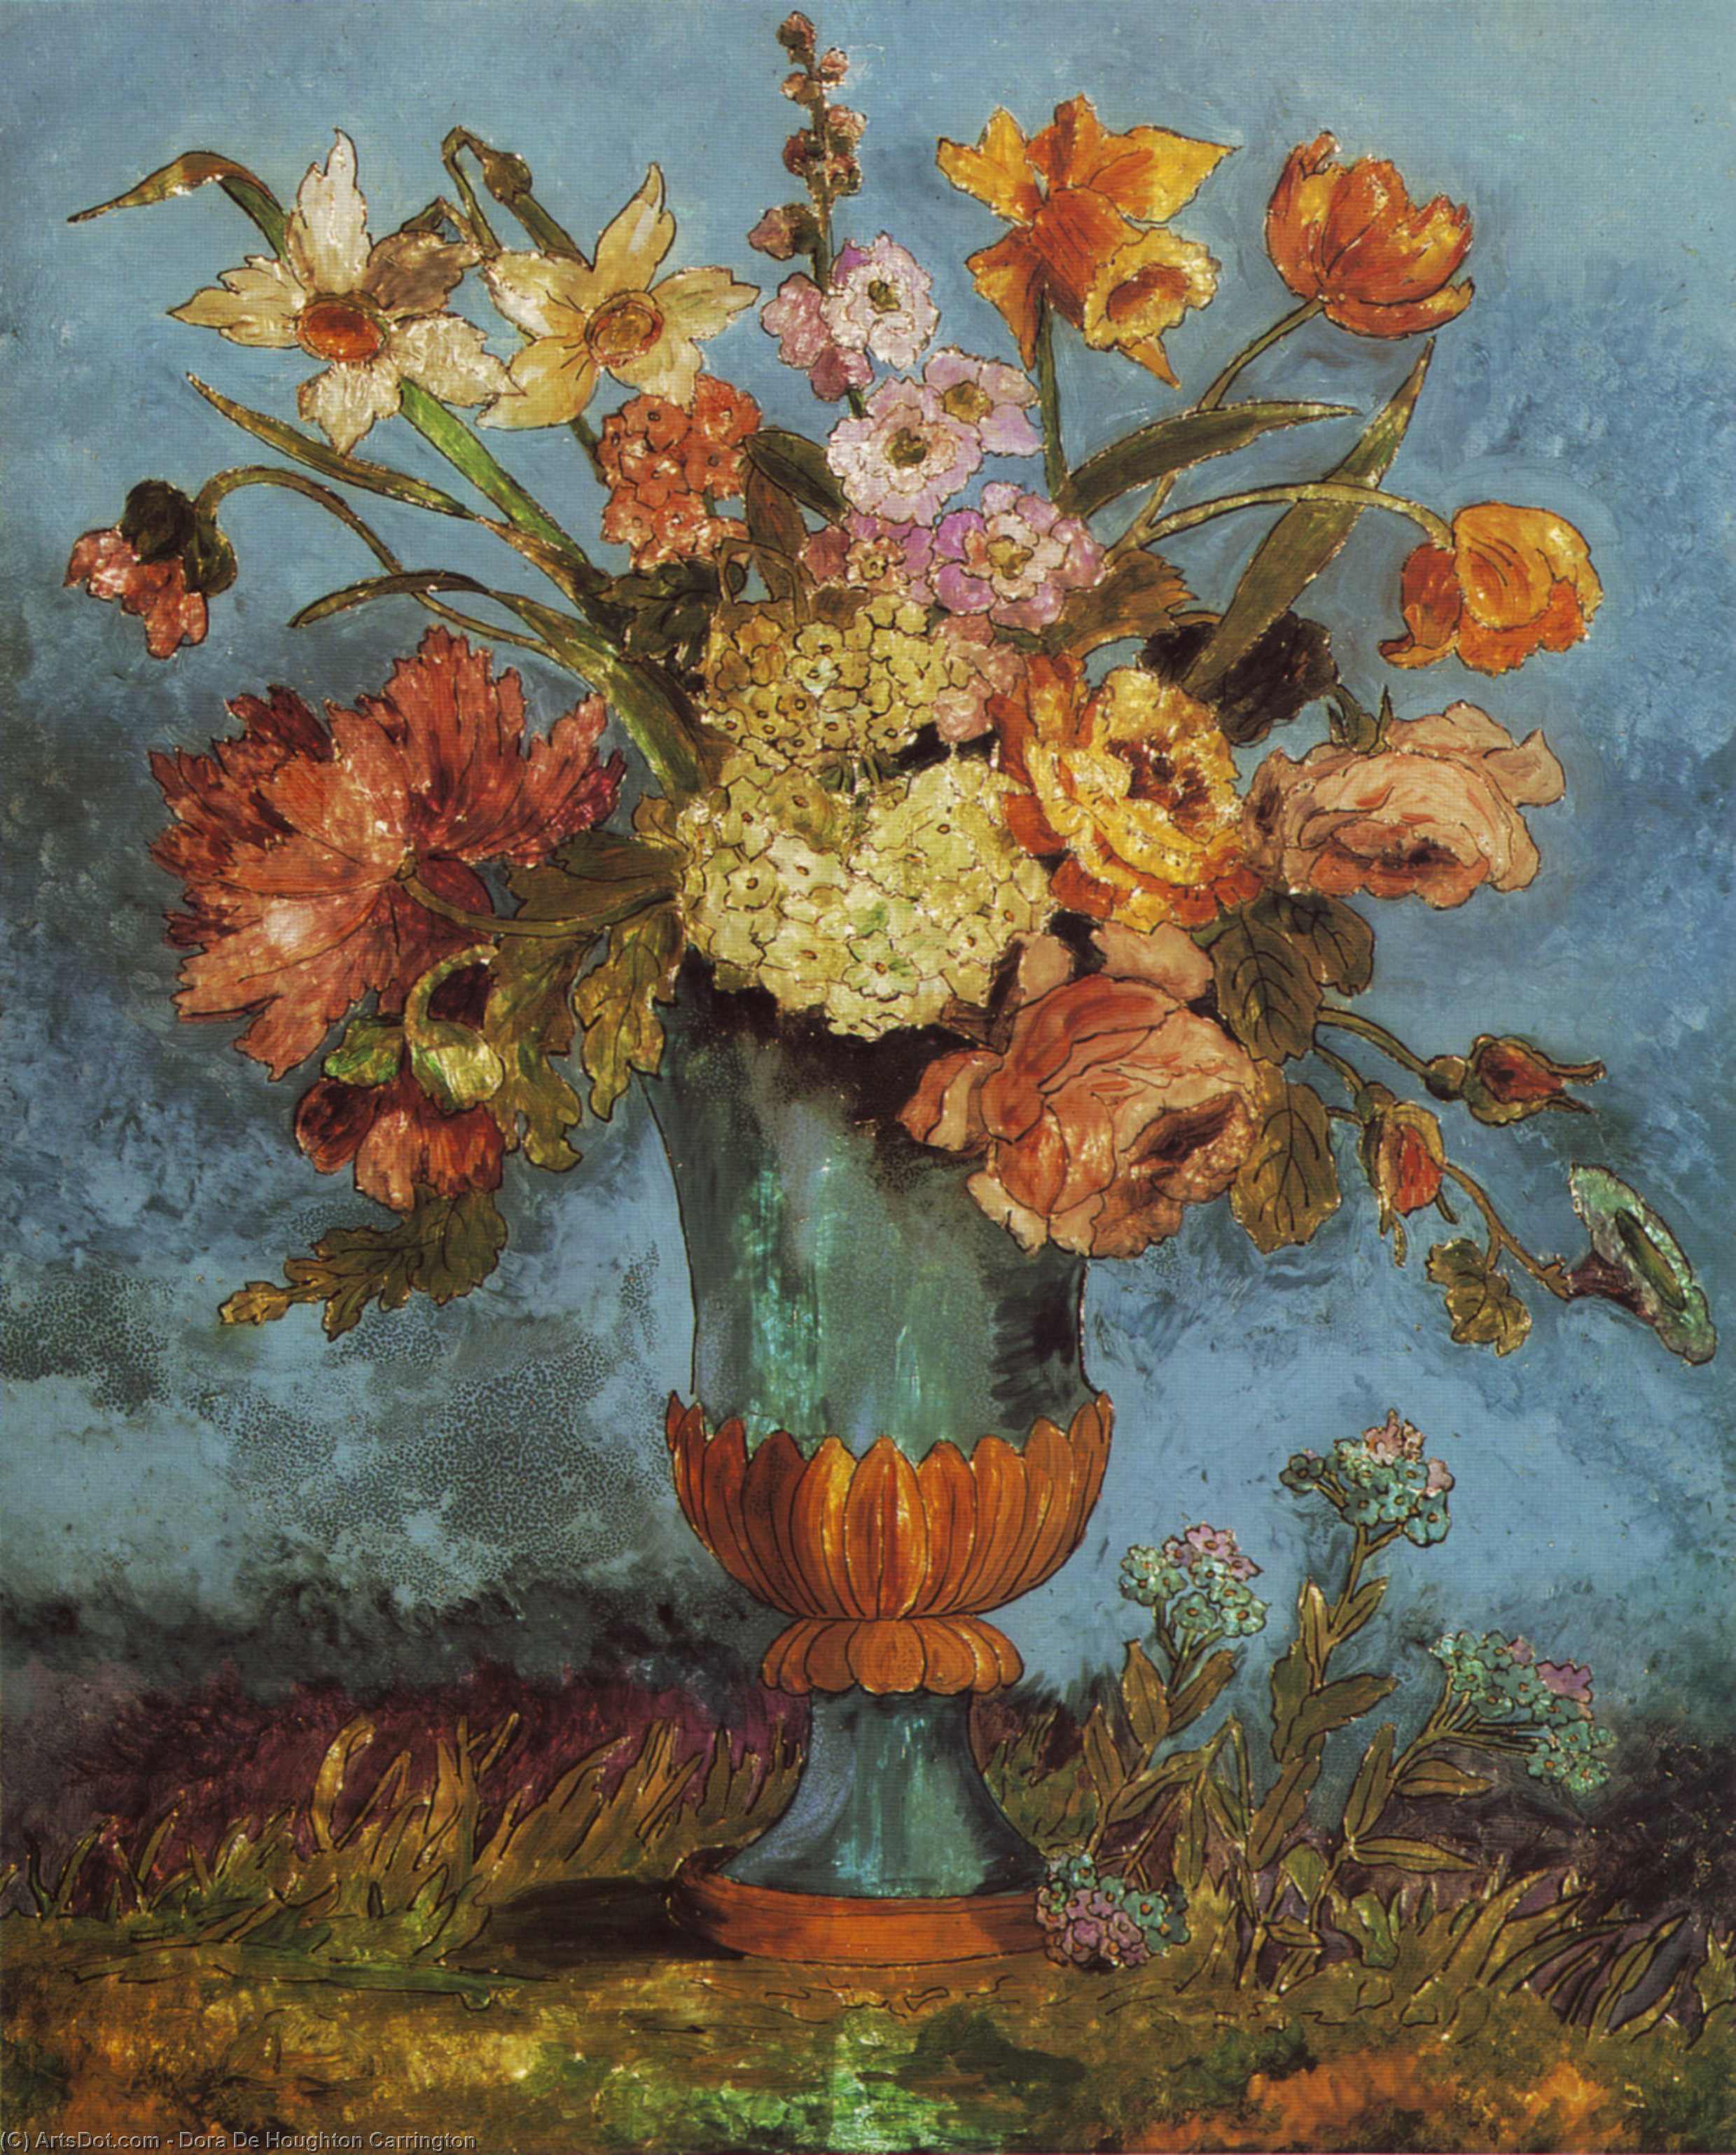 WikiOO.org - Enciklopedija dailės - Tapyba, meno kuriniai Dora De Houghton Carrington - Flowerpiece